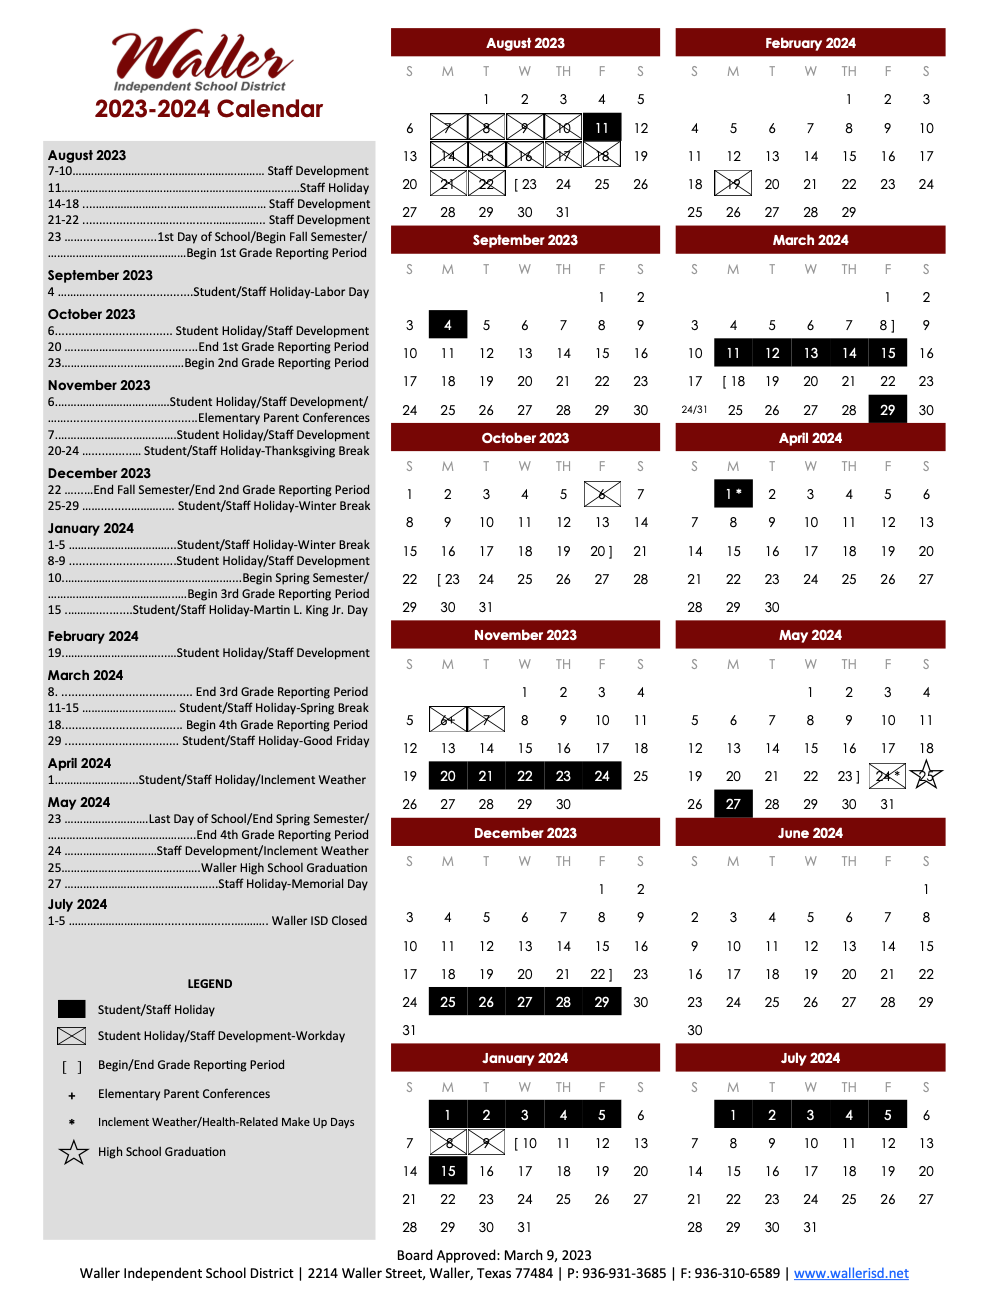 The upcoming 2023-2024 school year calendar in Waller, Texas. (courtesy Waller ISD)